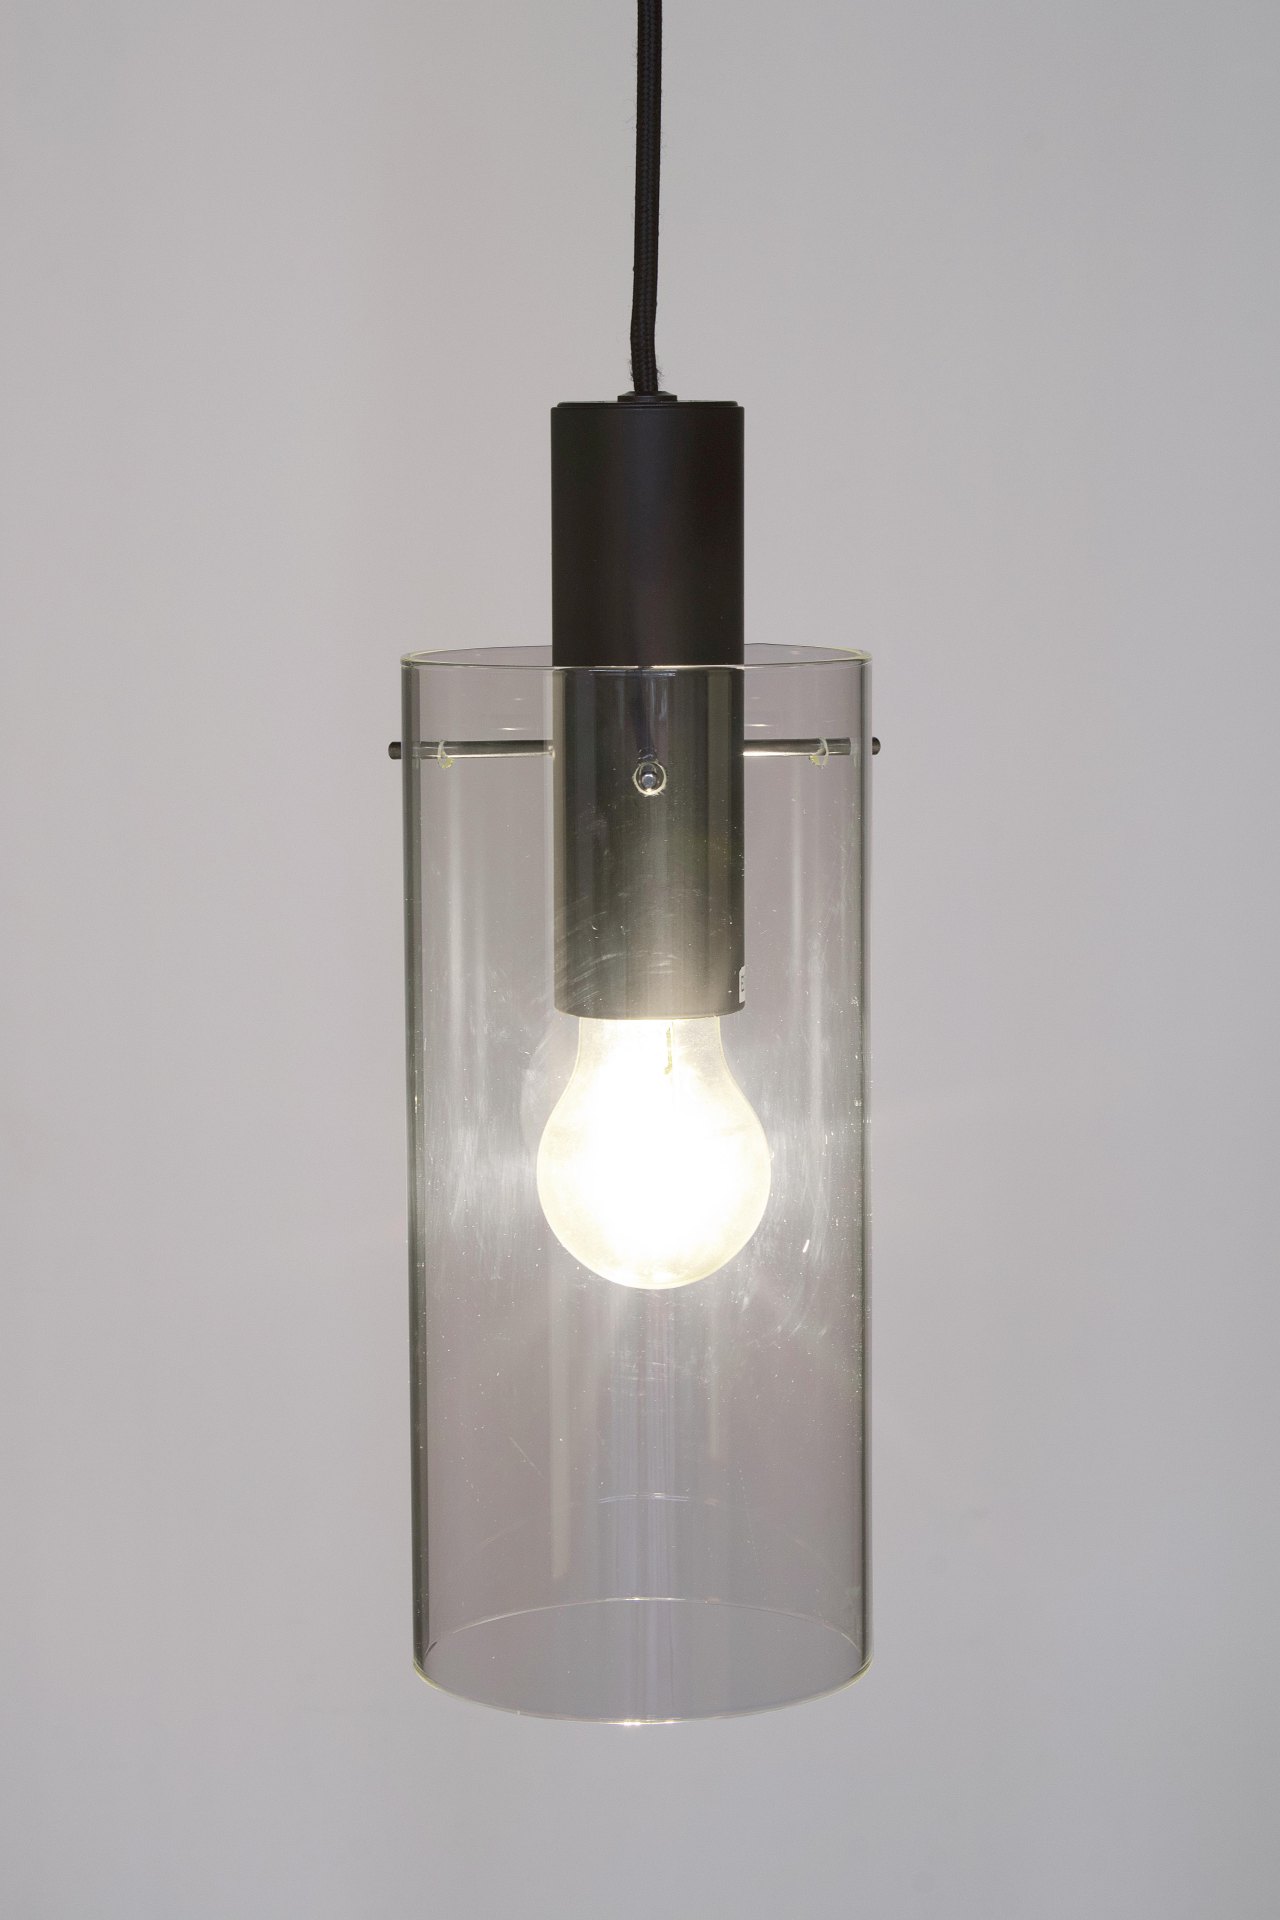 Die Hängeleuchte Aglow überzeugt mit ihrem modernen Design. Gefertigt wurde sie aus Metall, welches einen schwarzen Farbton besitzt. Der Lampenschirm ist aus Glas und ist klar. Die Lampe besitzt eine Höhe von 130 cm.